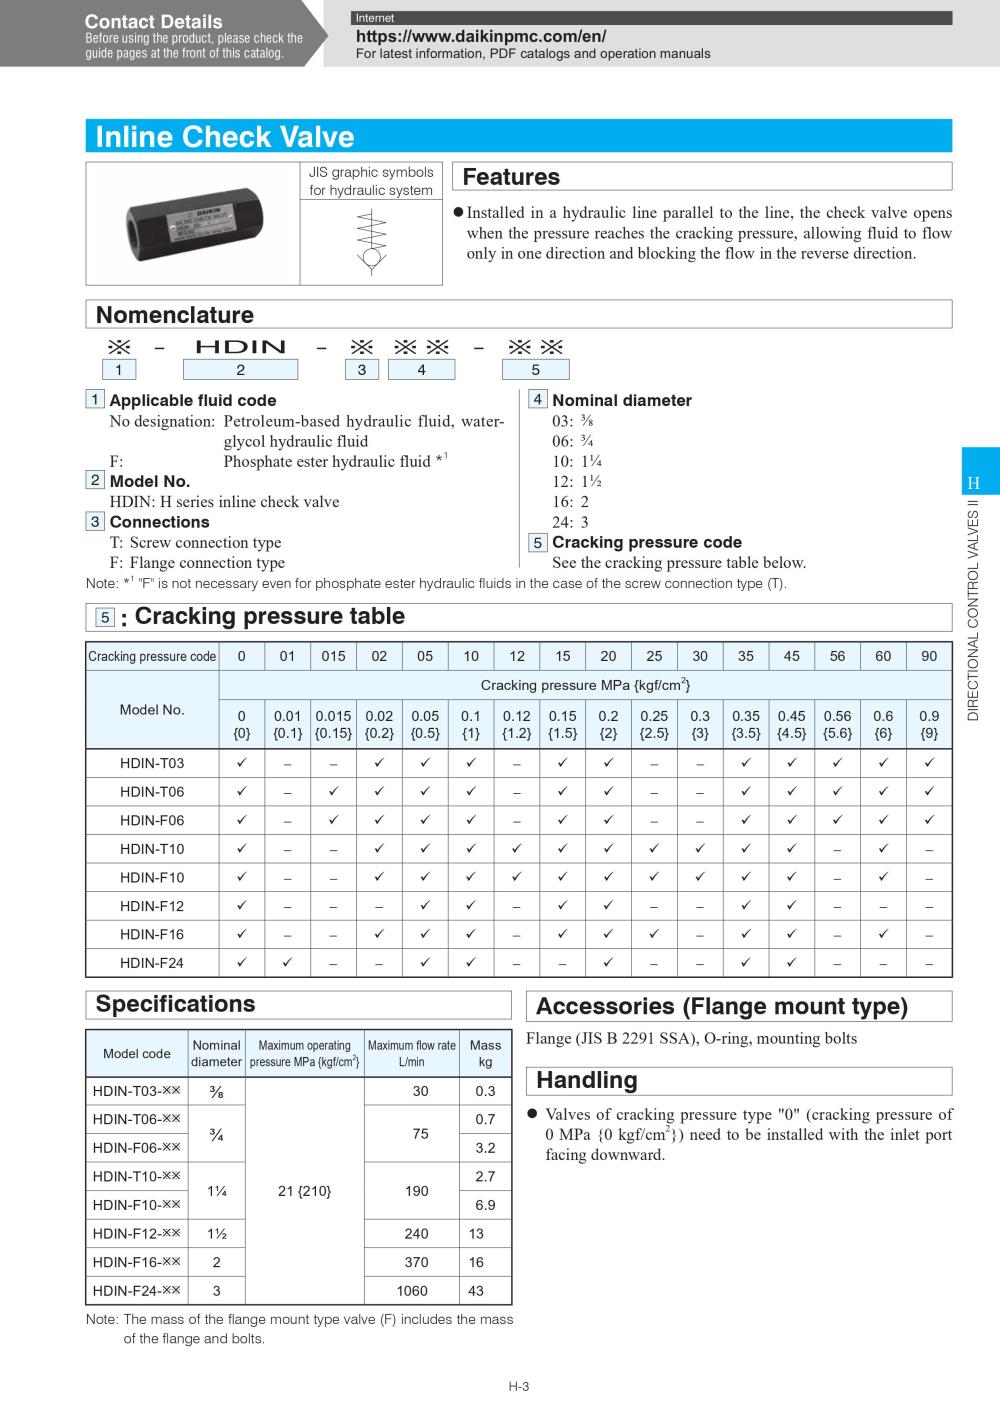 DAIKIN Inline Check Valve HDIN-T06 Series